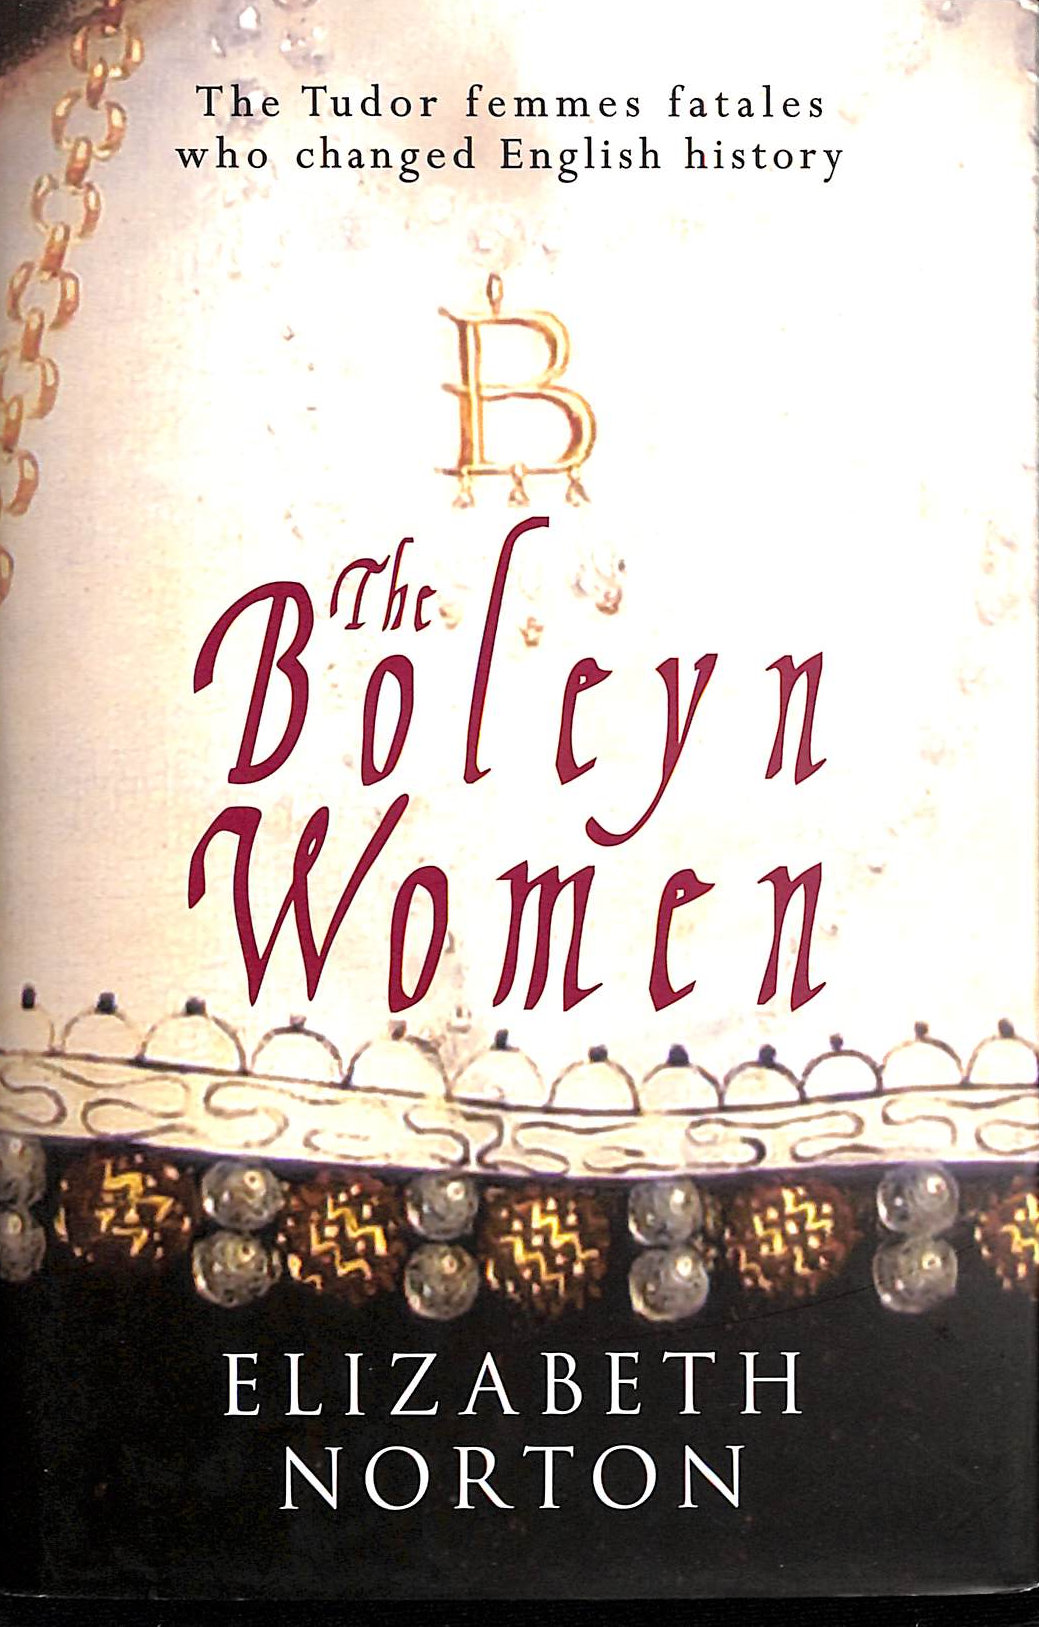 NORTON, ELIZABETH - The Boleyn Women: The Tudor Femmes Fatales Who Changed English History